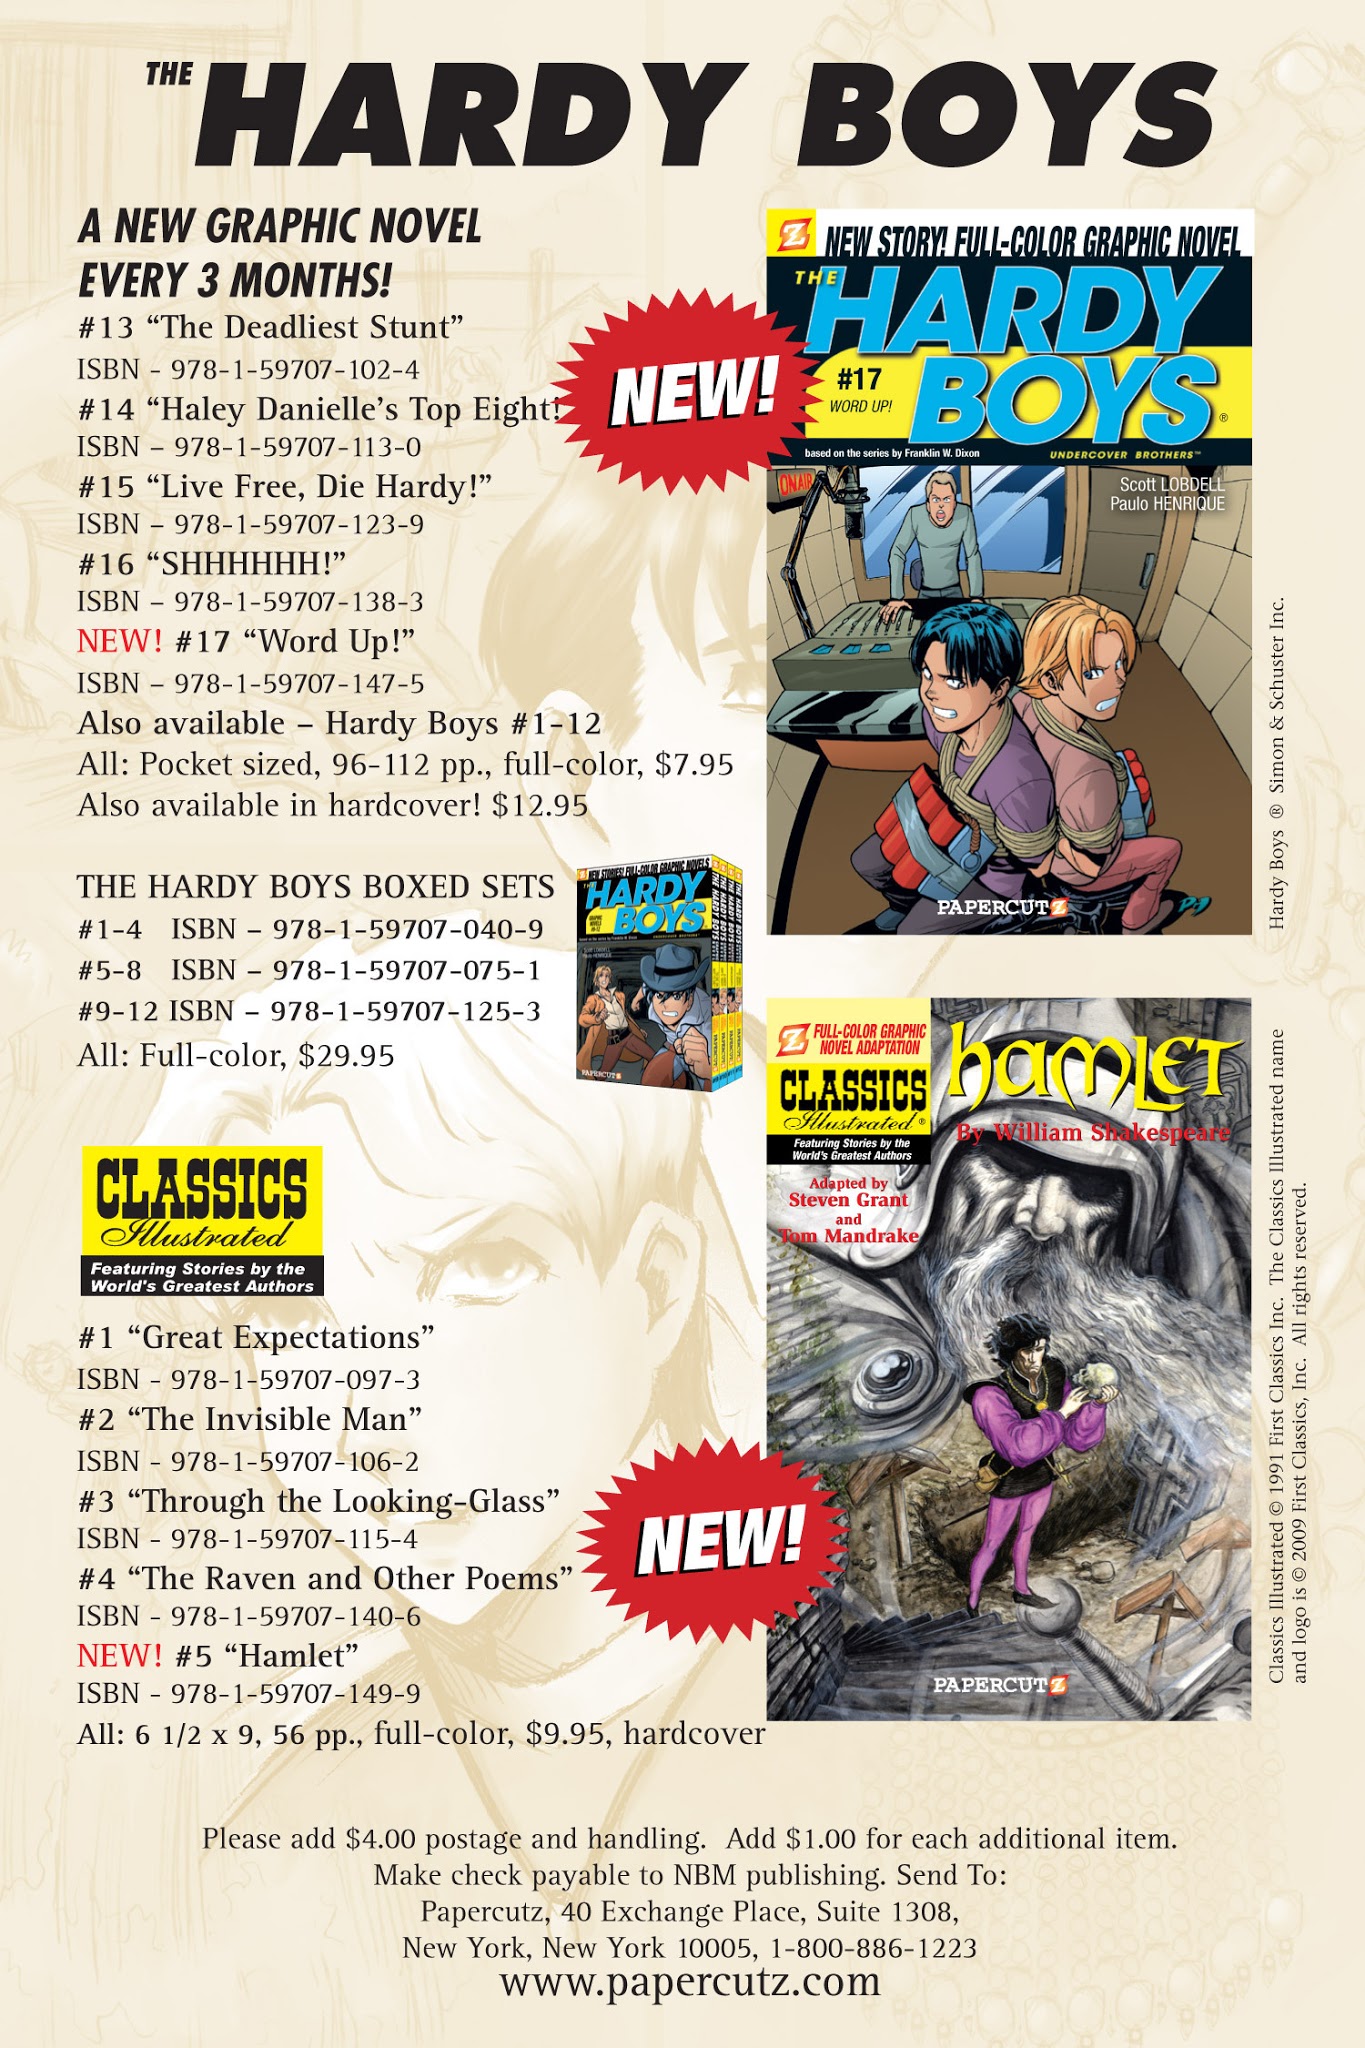 Read online Nancy Drew comic -  Issue #18 - 84